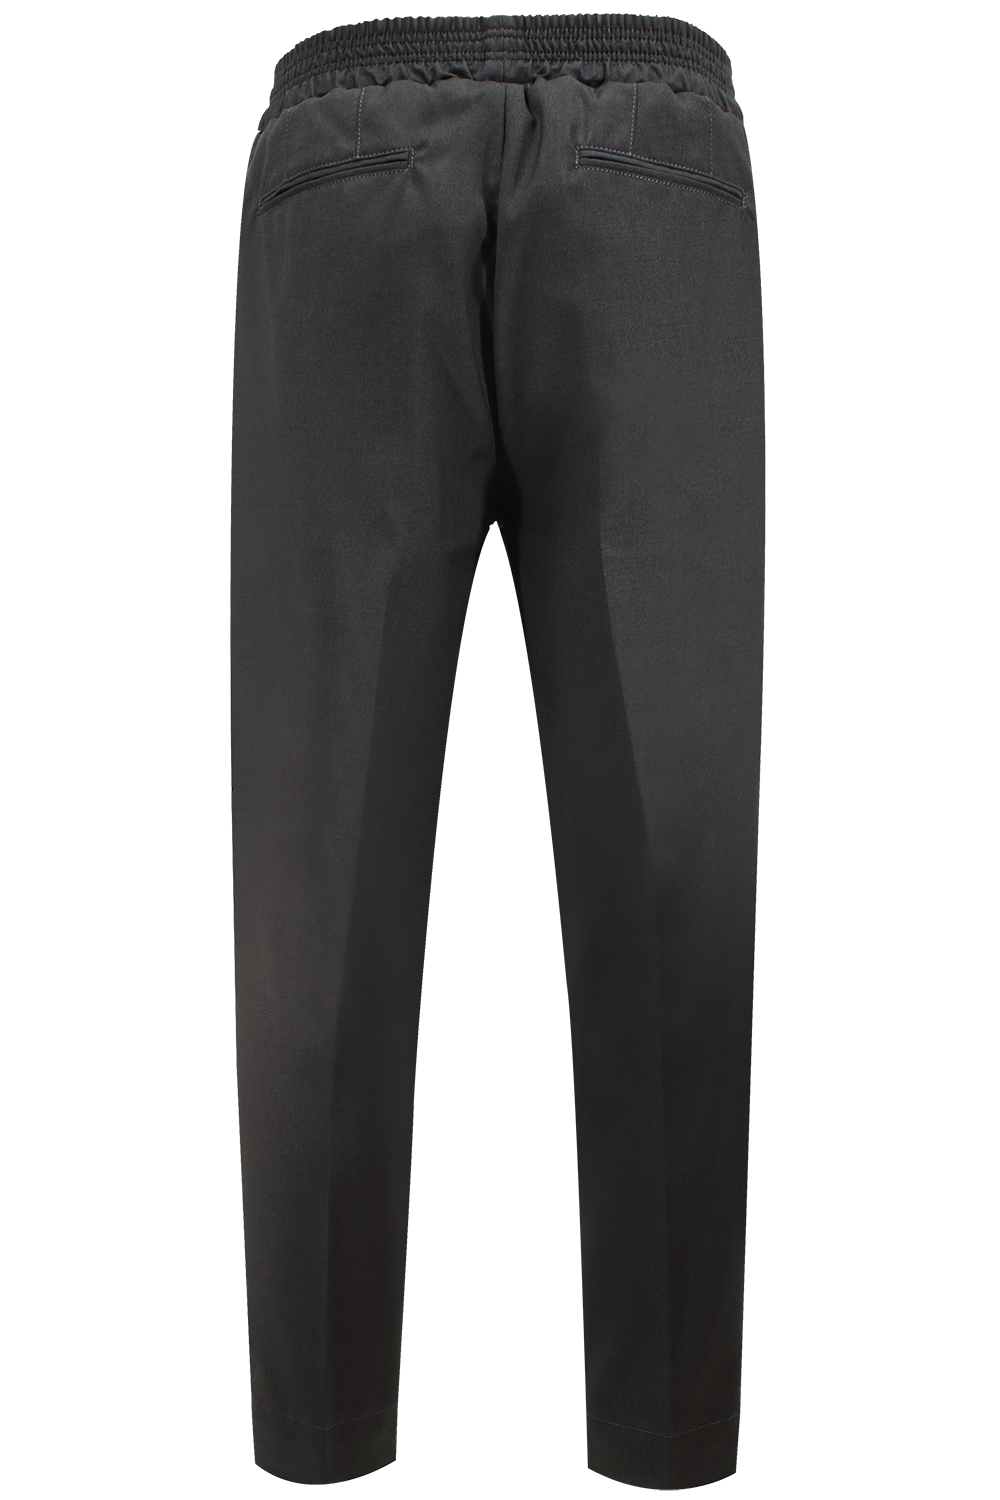 Pantalone con elastico in vita in cotone grigio scuro retro